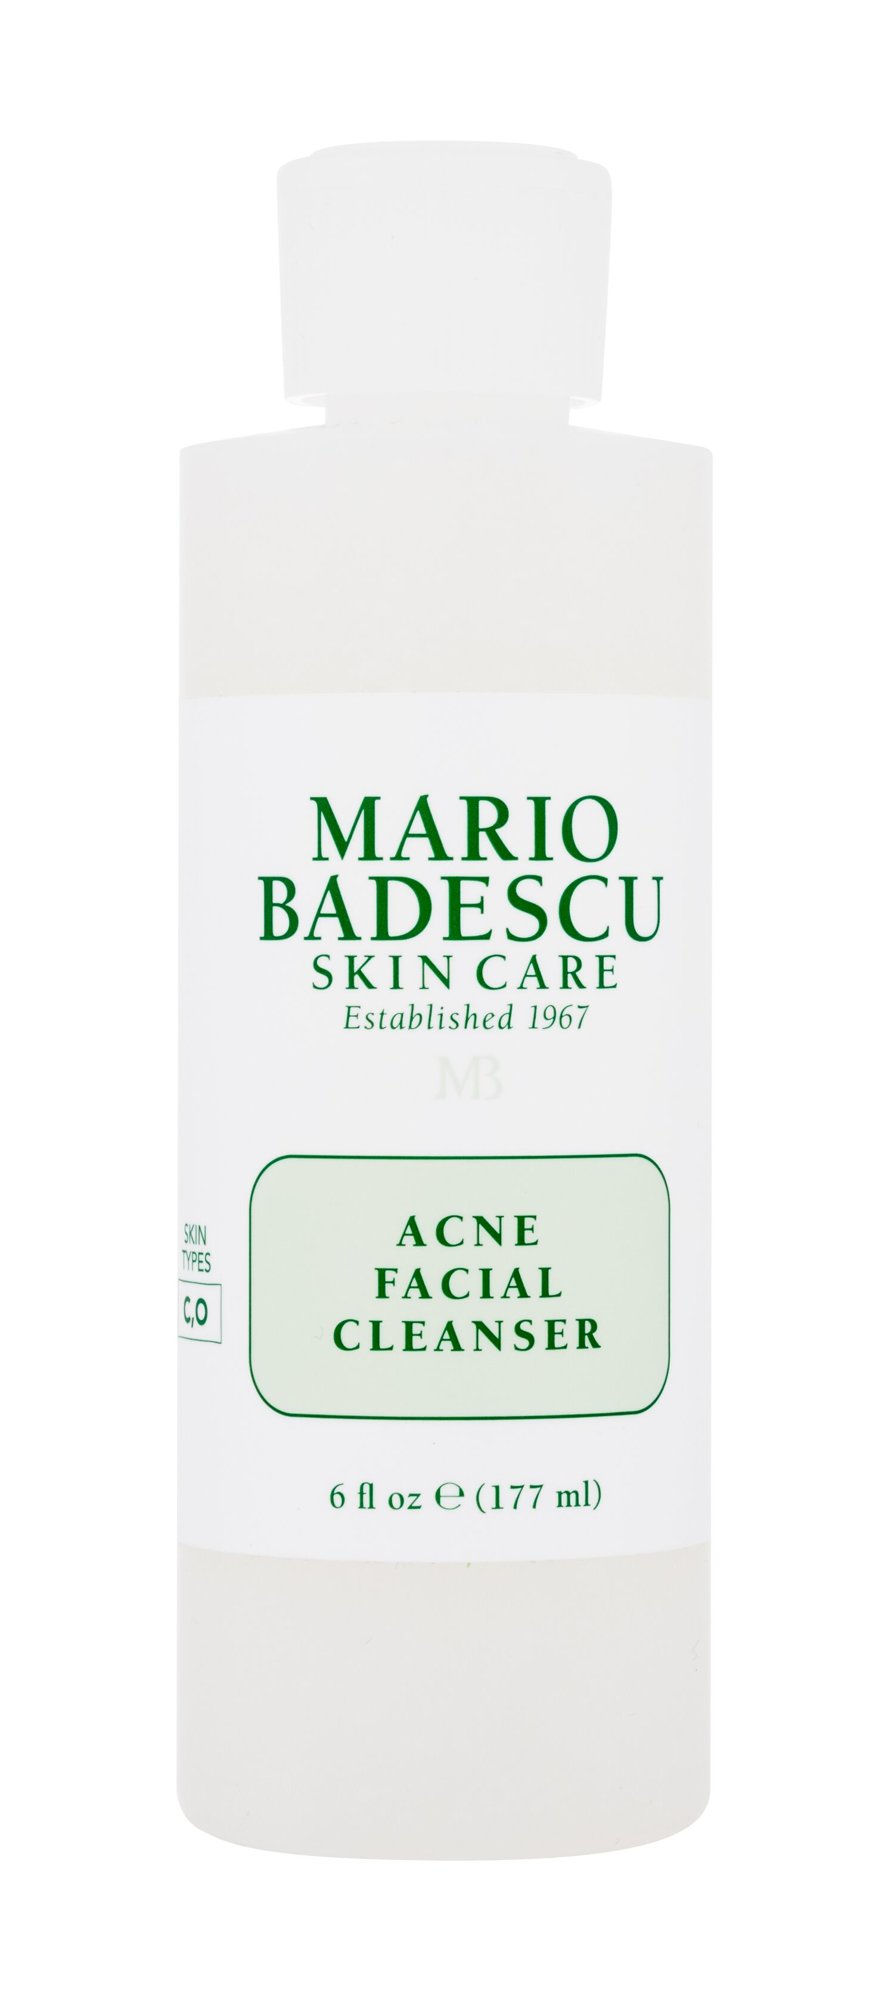 Mario Badescu Acne Facial Cleanser veido gelis